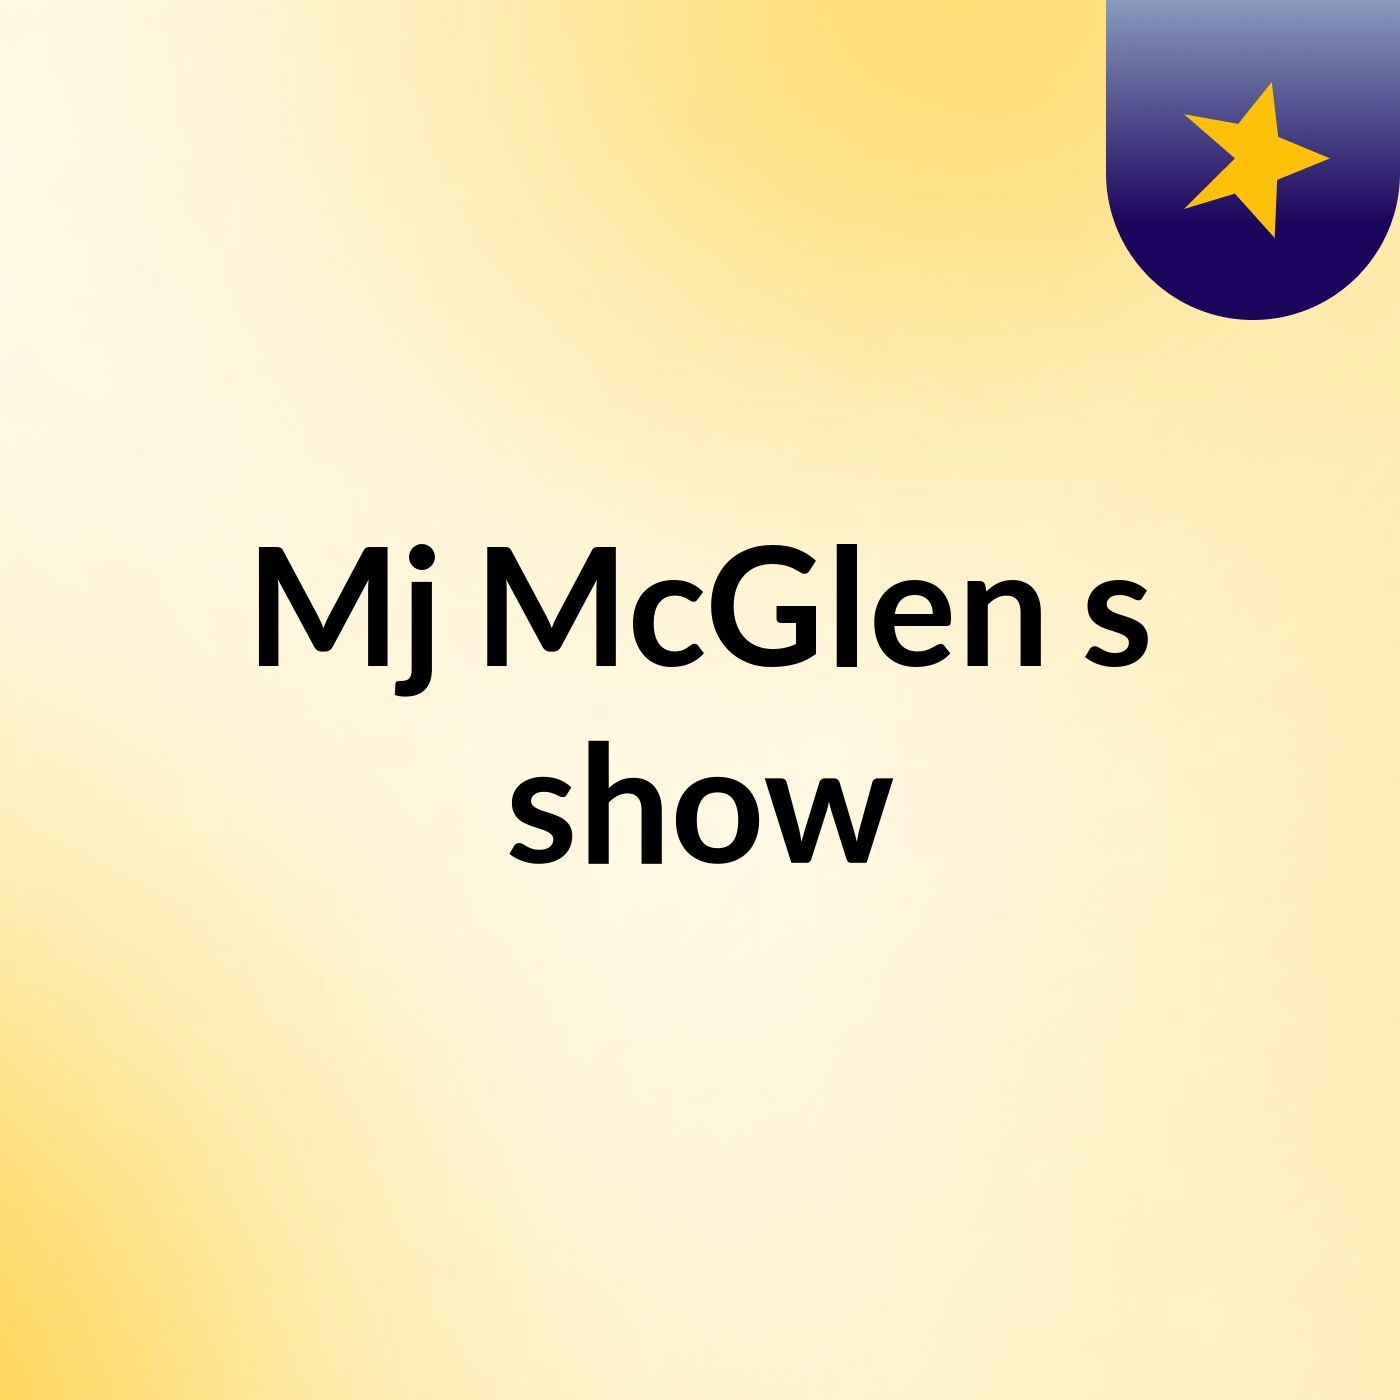 Episode 11 - Mj McGlen's show